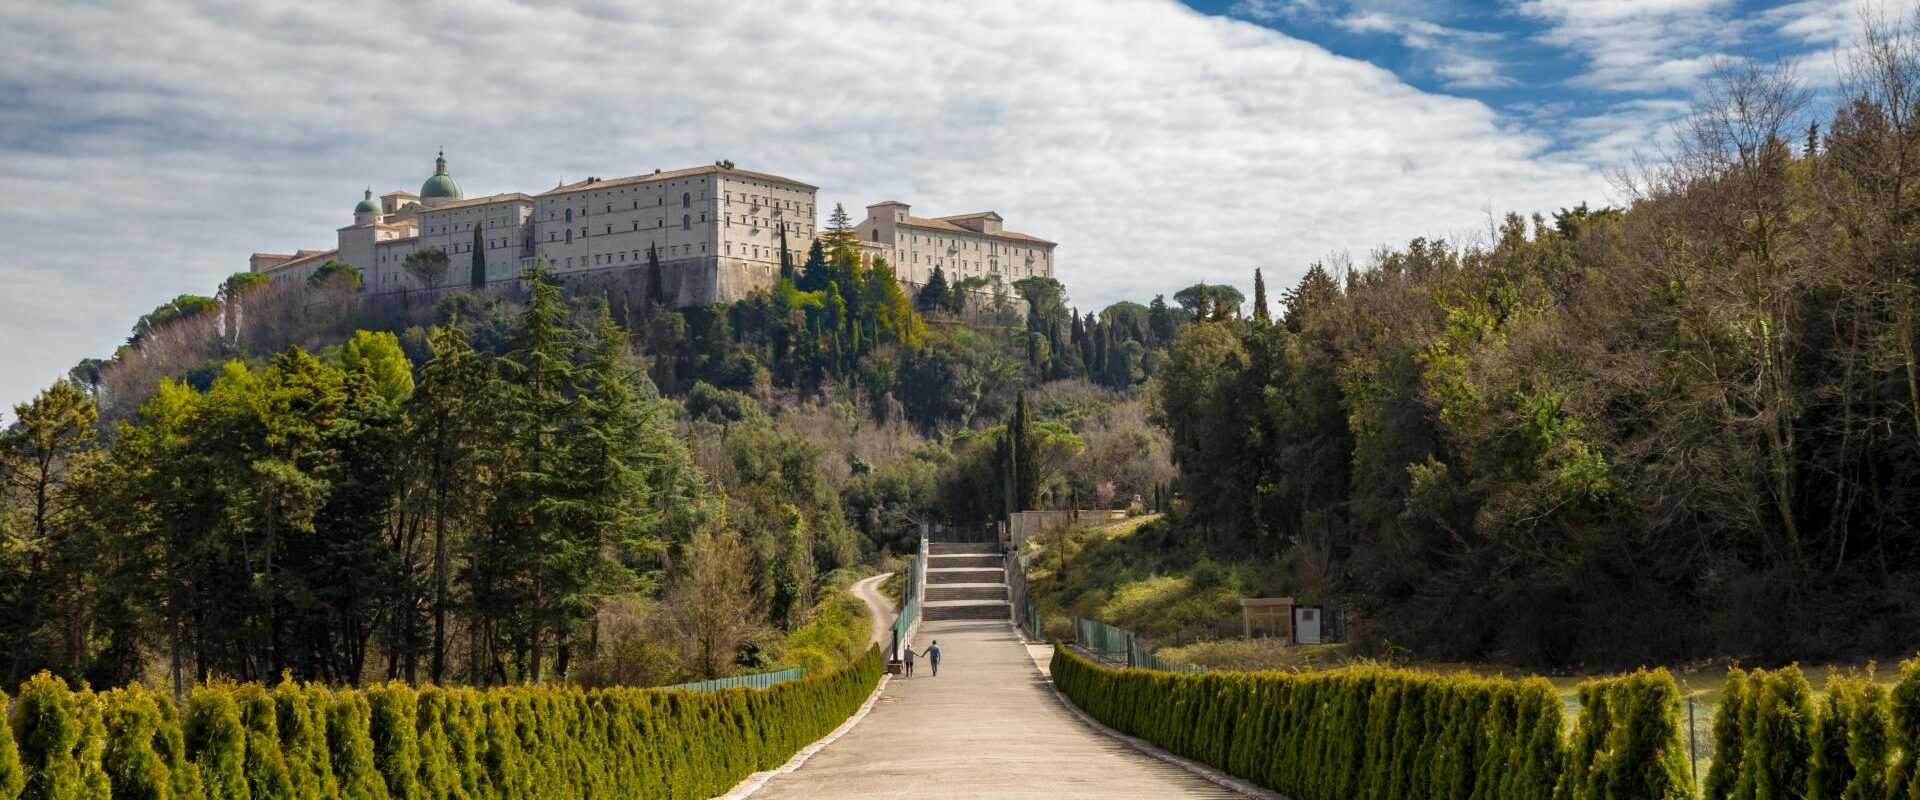 Co zobaczyć na Monte Cassino? Jak zaplanować zwiedzanie? Mnóstwo praktycznych informacji dla polskich turystów